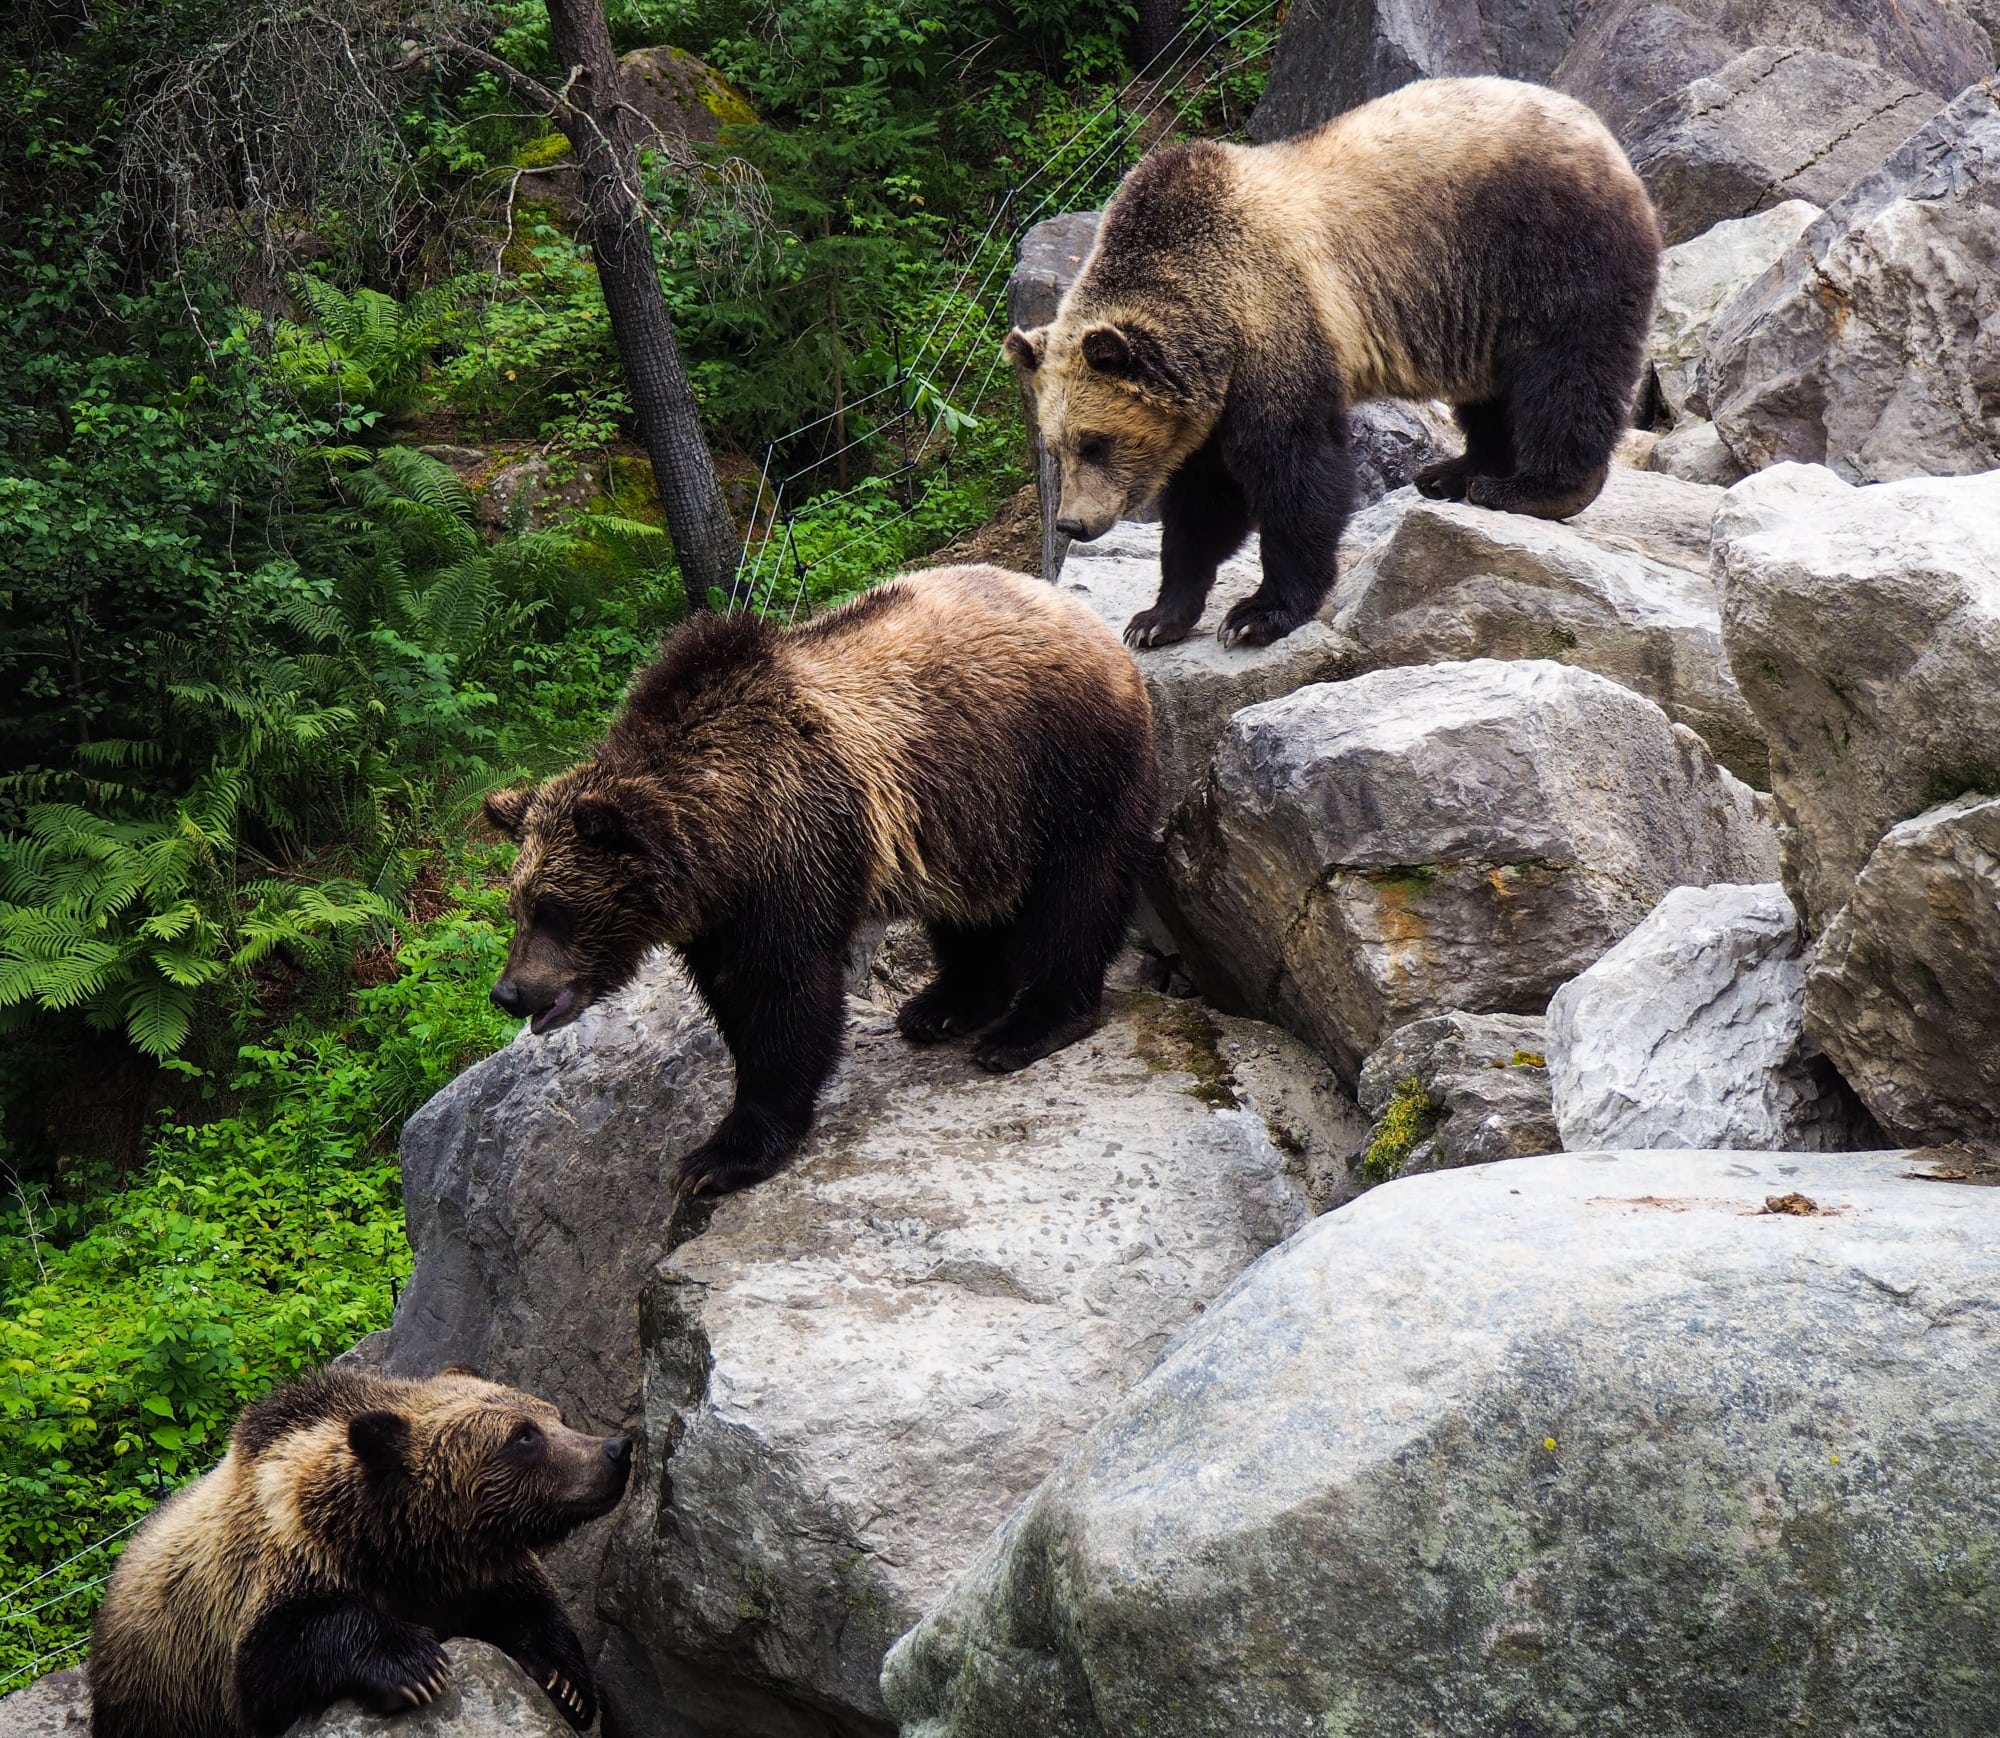 Происшествия, Томские новости, медведи дикие животные нападение сводка жесть Томска интересные новости Три медведя повадились воровать овец в томской деревне